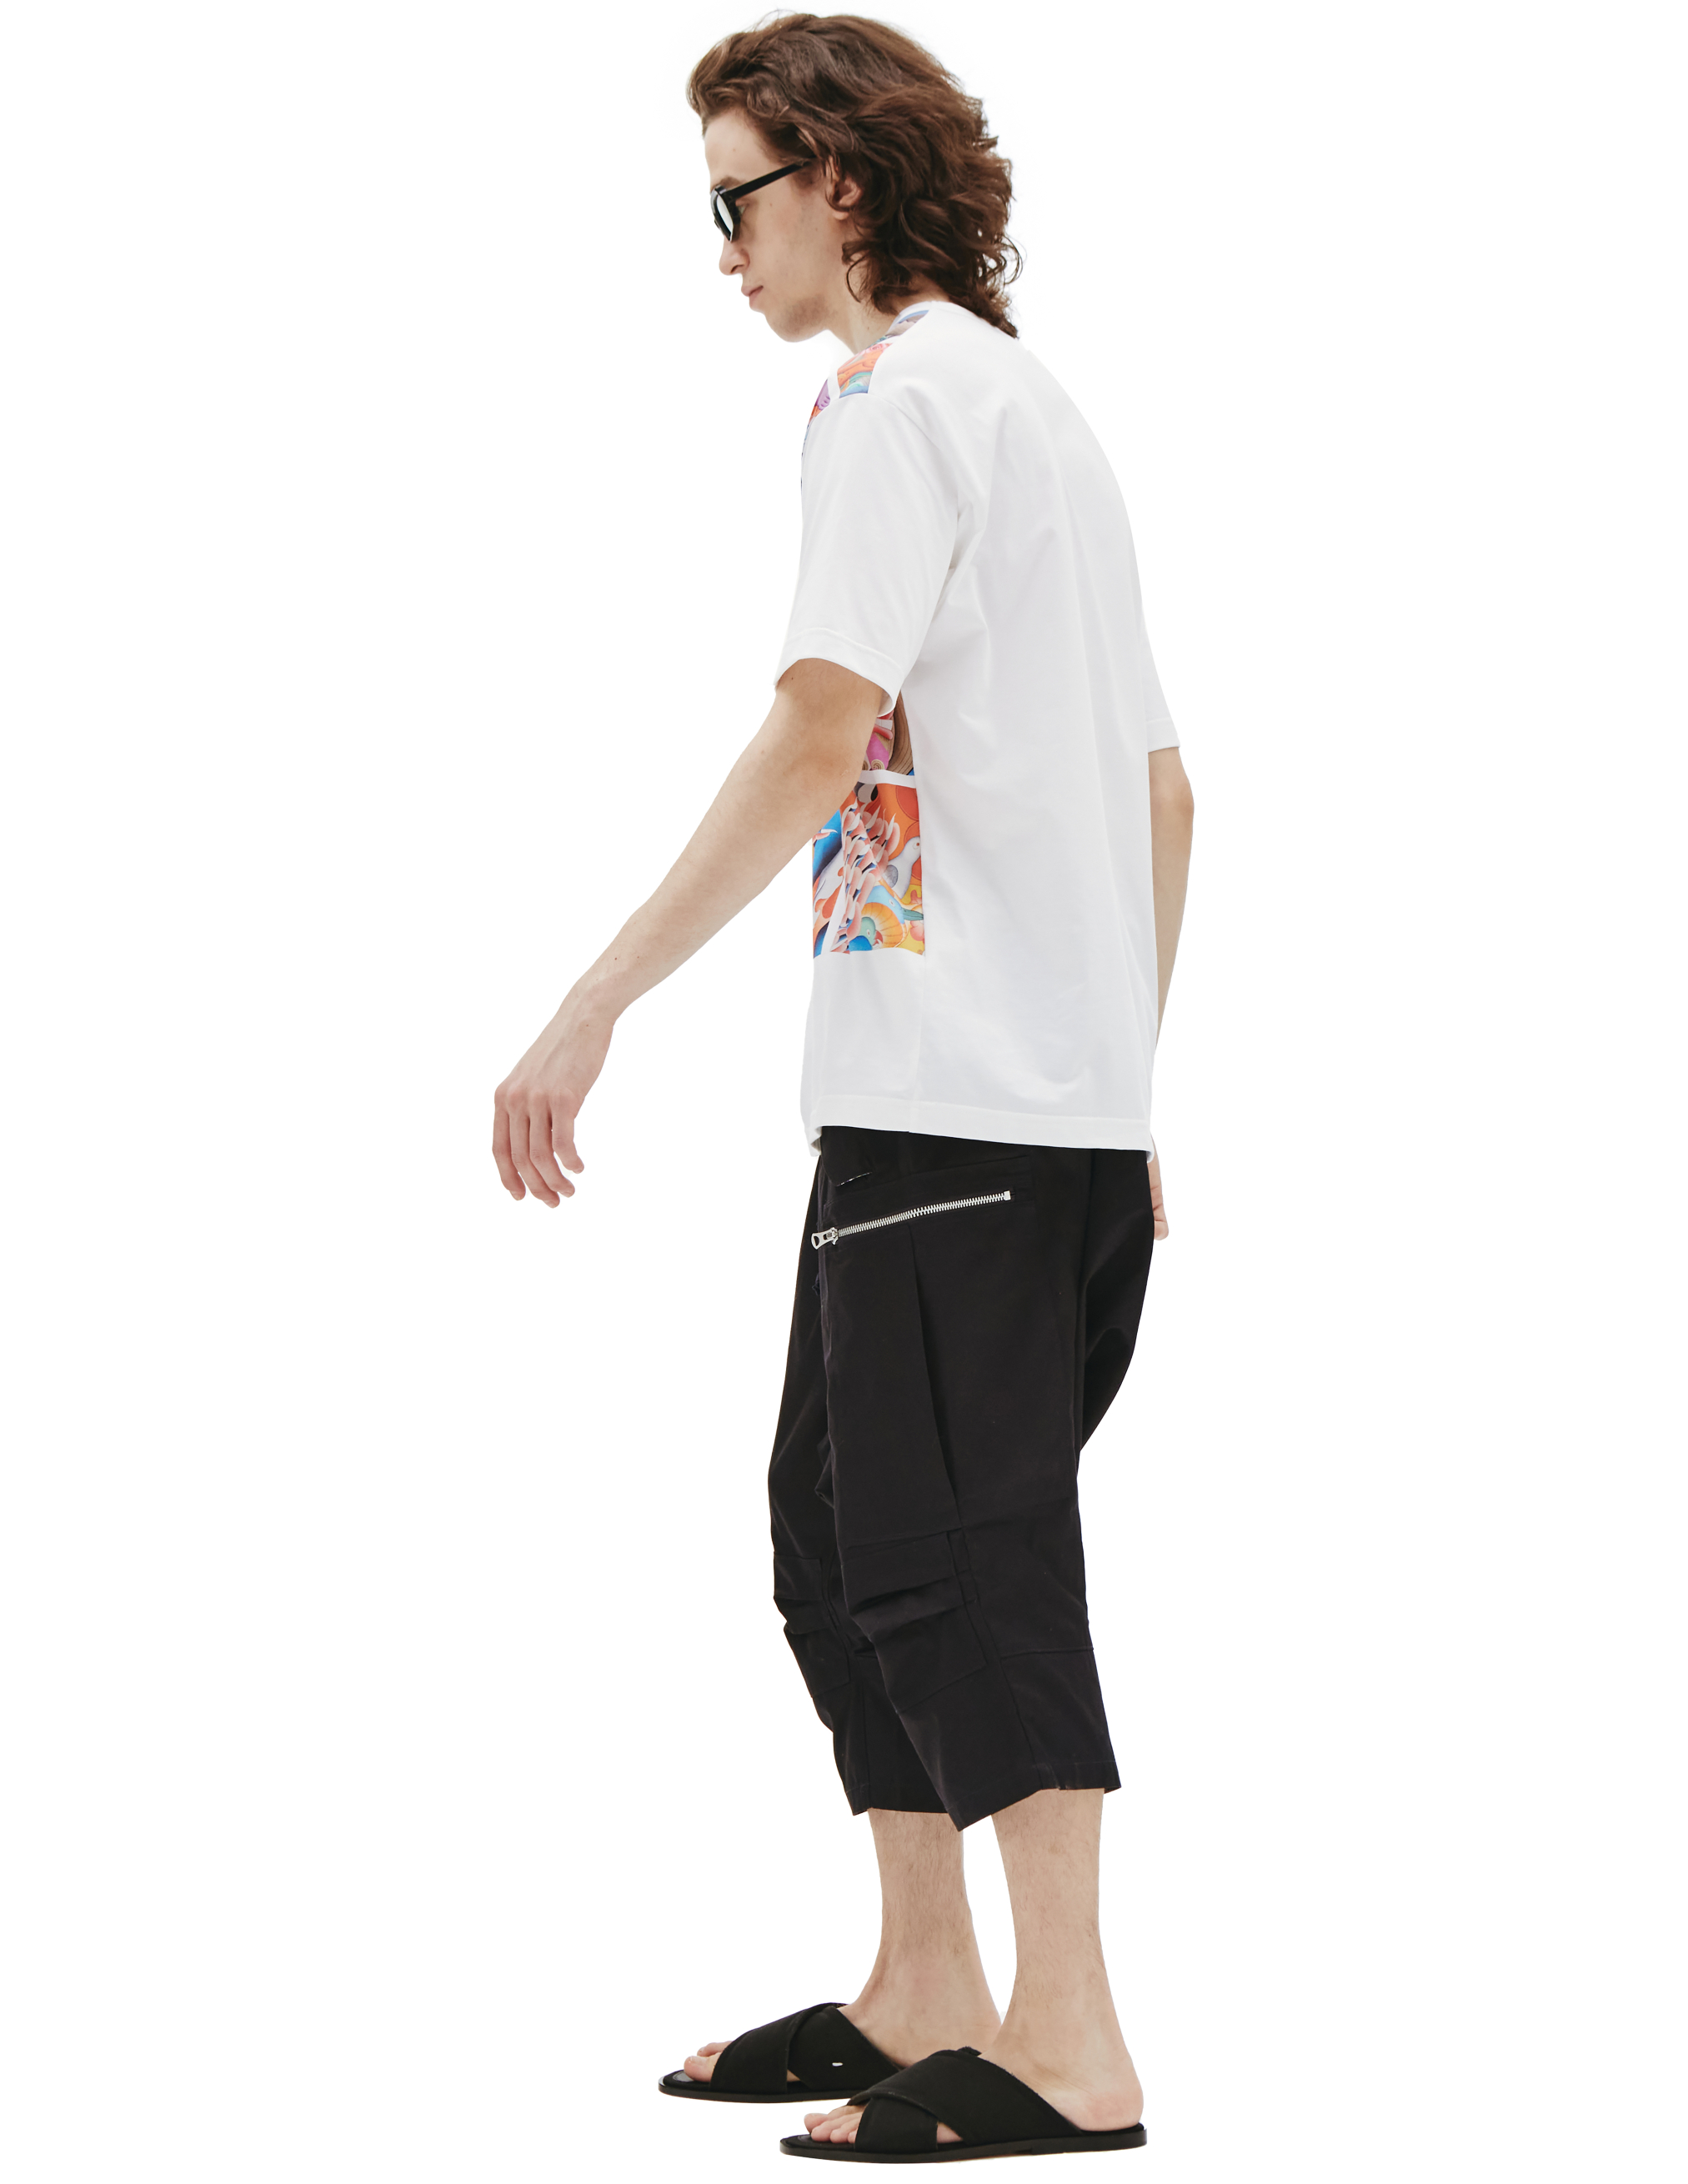 Хлопковая футболка с восточным принтом Junya Watanabe WI-T004-051-1, размер XL;L - фото 2